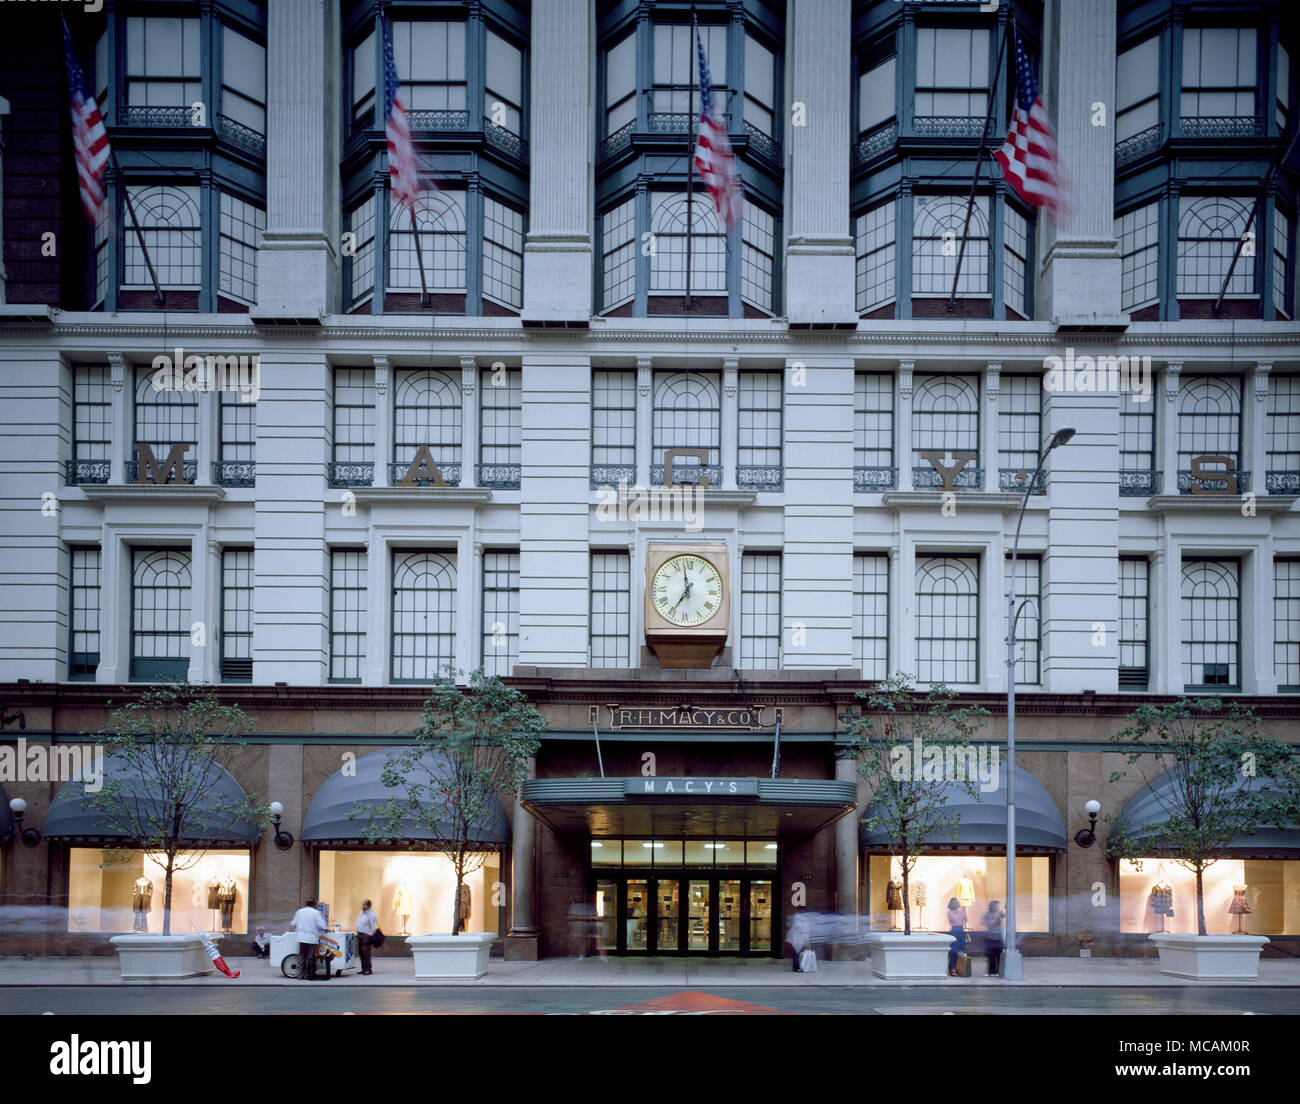 Macy's Herald Square, à l'origine connu sous le nom de R. H. Macy et le magasin de la compagnie, est le navire amiral de grands magasins Macy's Herald Square, situé sur la région de Manhattan, New York. Le bâtiment est de 2,2 millions de pieds carrés (près de 205 000 mètres carrés) en ont fait le plus grand grand magasin depuis 1924 jusqu'en 2009. En 2011, le magasin est au site pour 110 ans. Banque D'Images